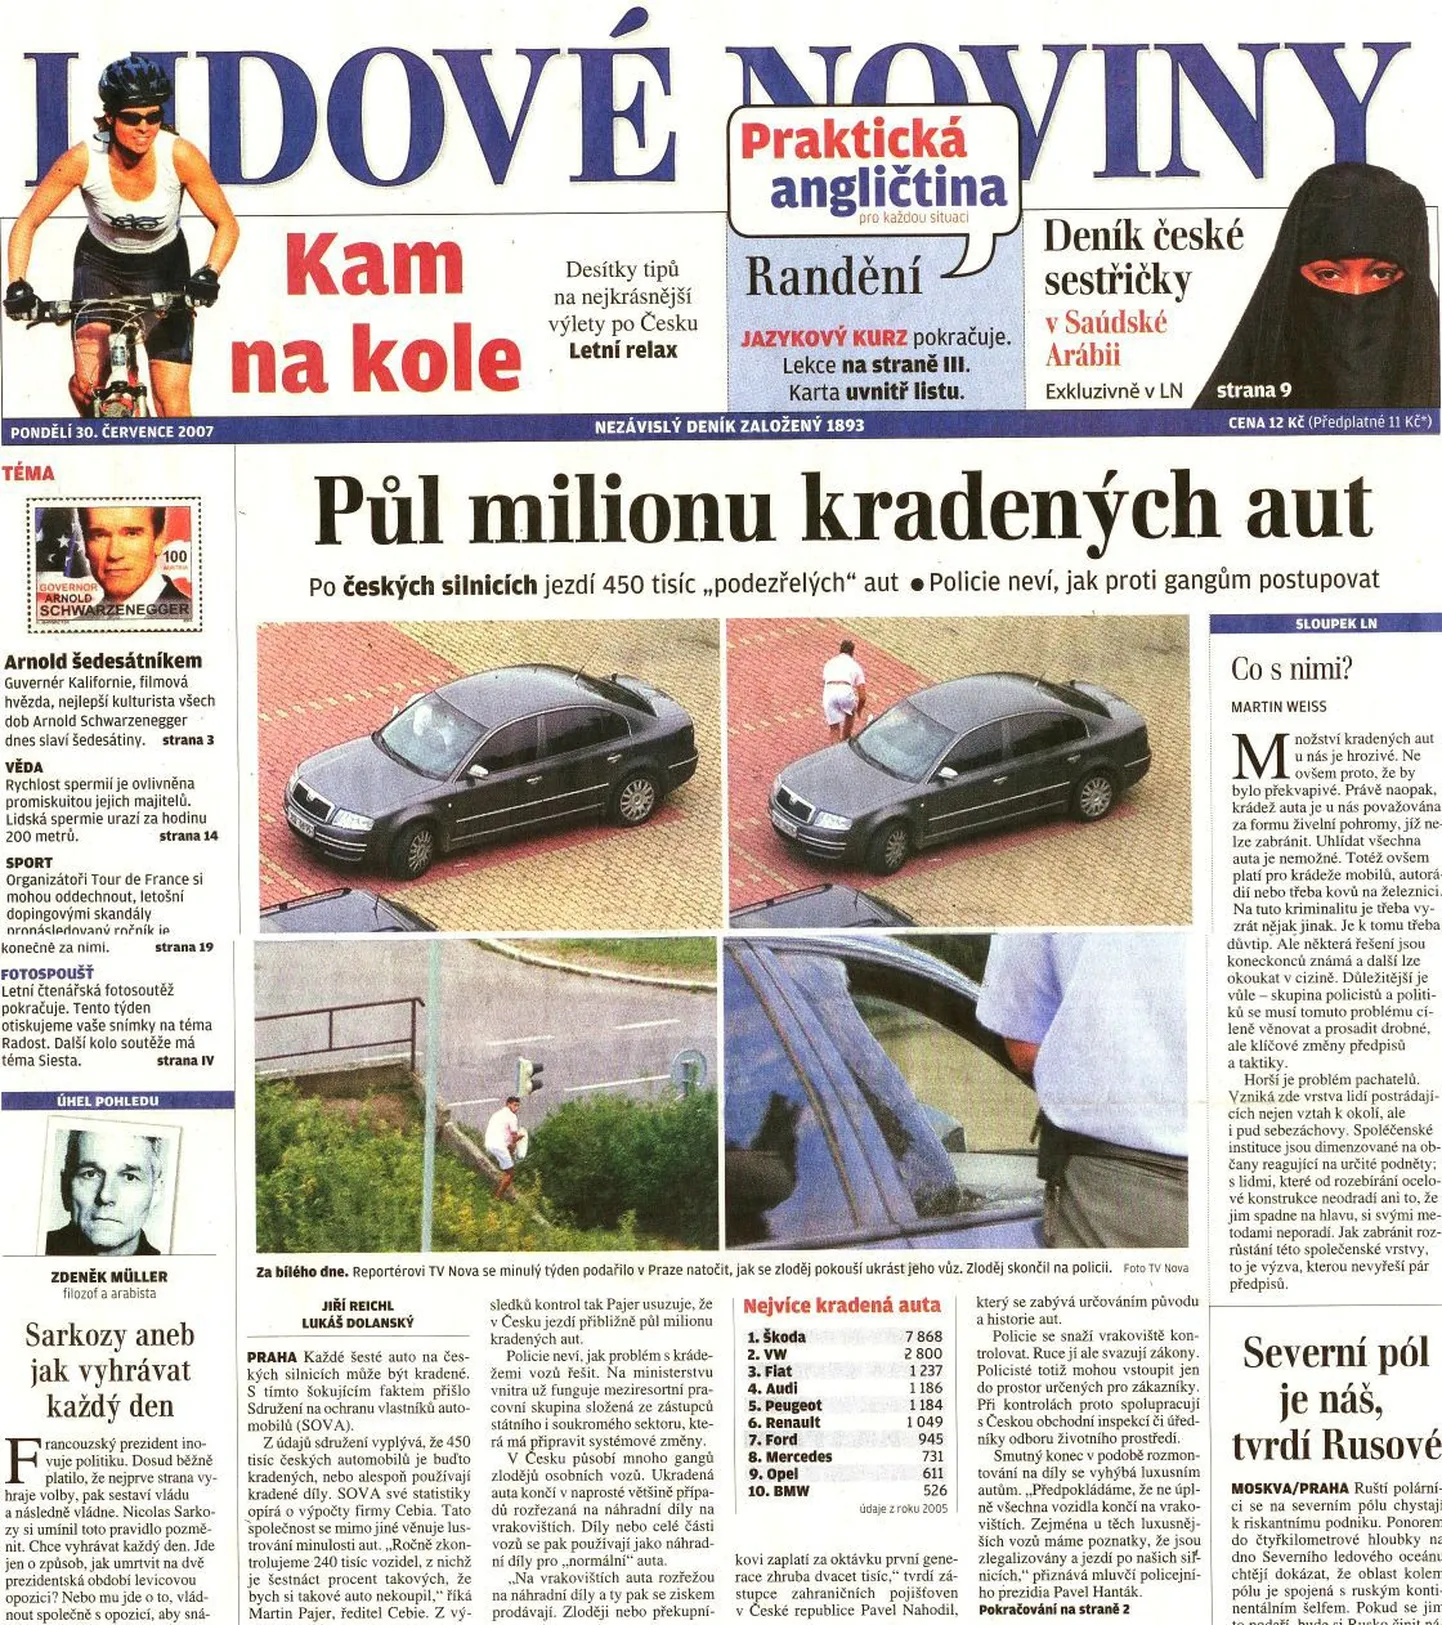 Tšehhi kultuuritegelaste kiri ilmus tänases ajalehes Lidove noviny.